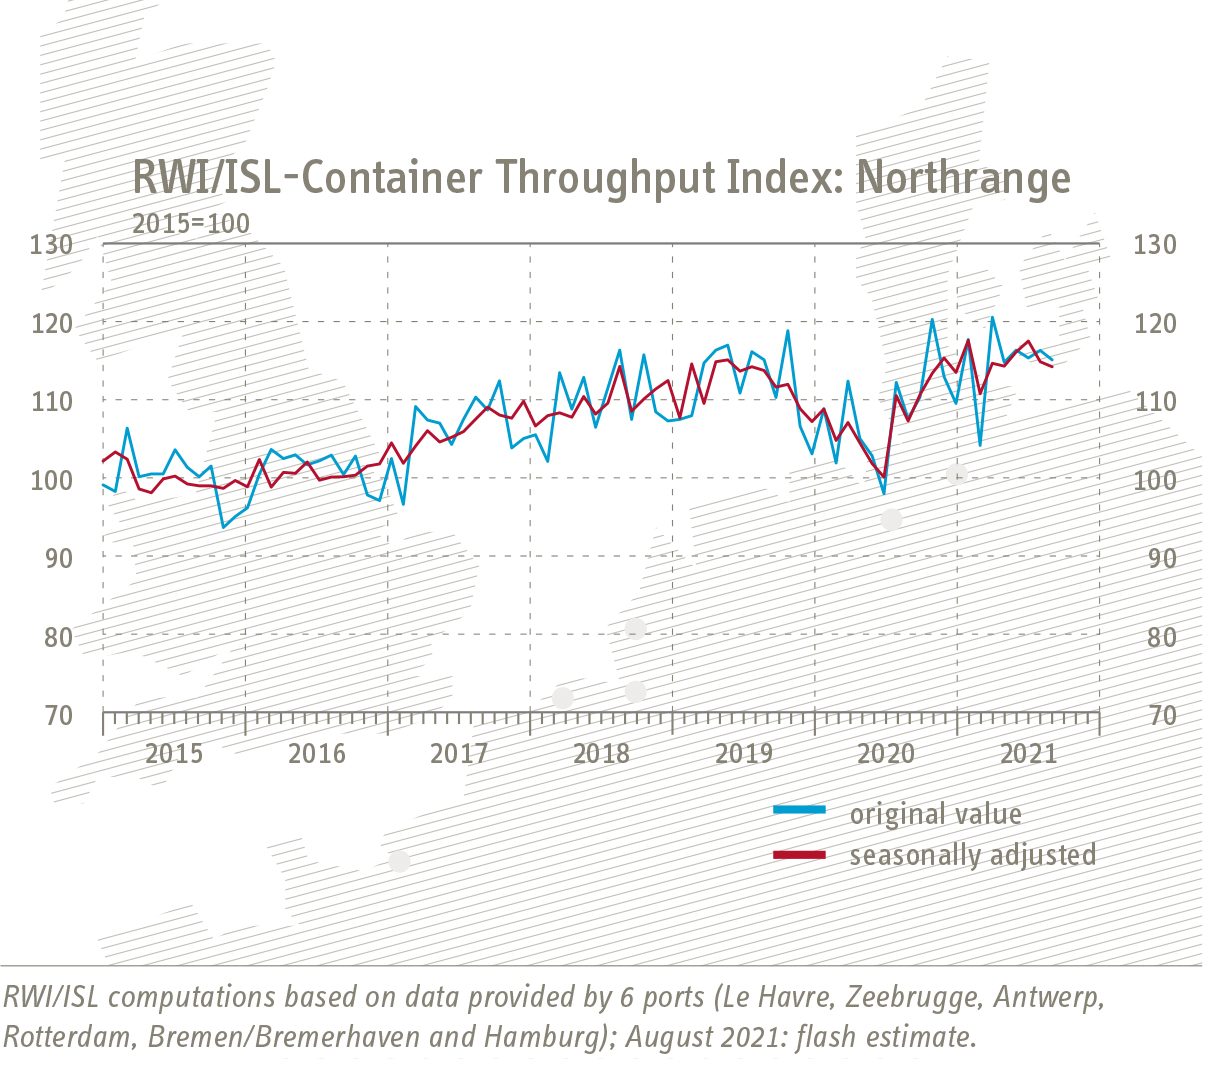 Grafik Entwicklung RWI/ISL-Containerumschlag-Index Nordrange